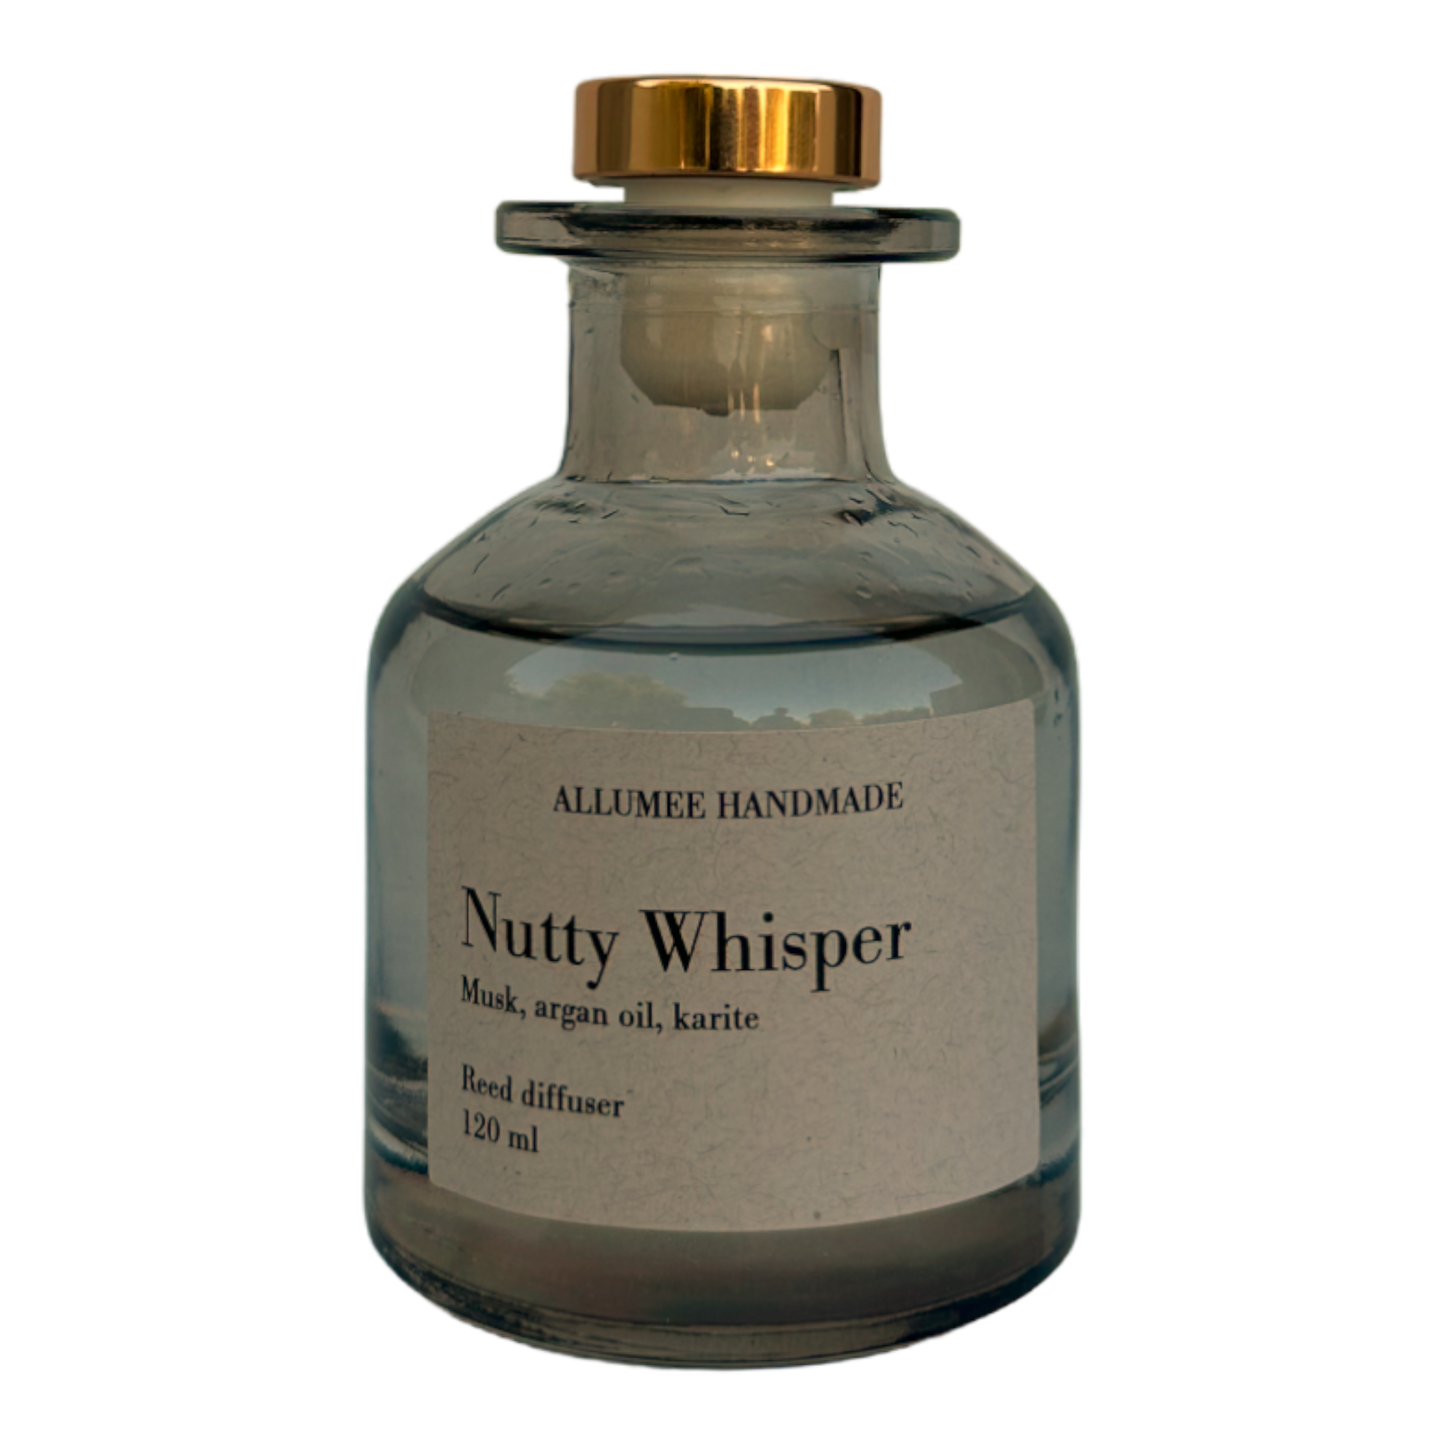 Nutty Whisper